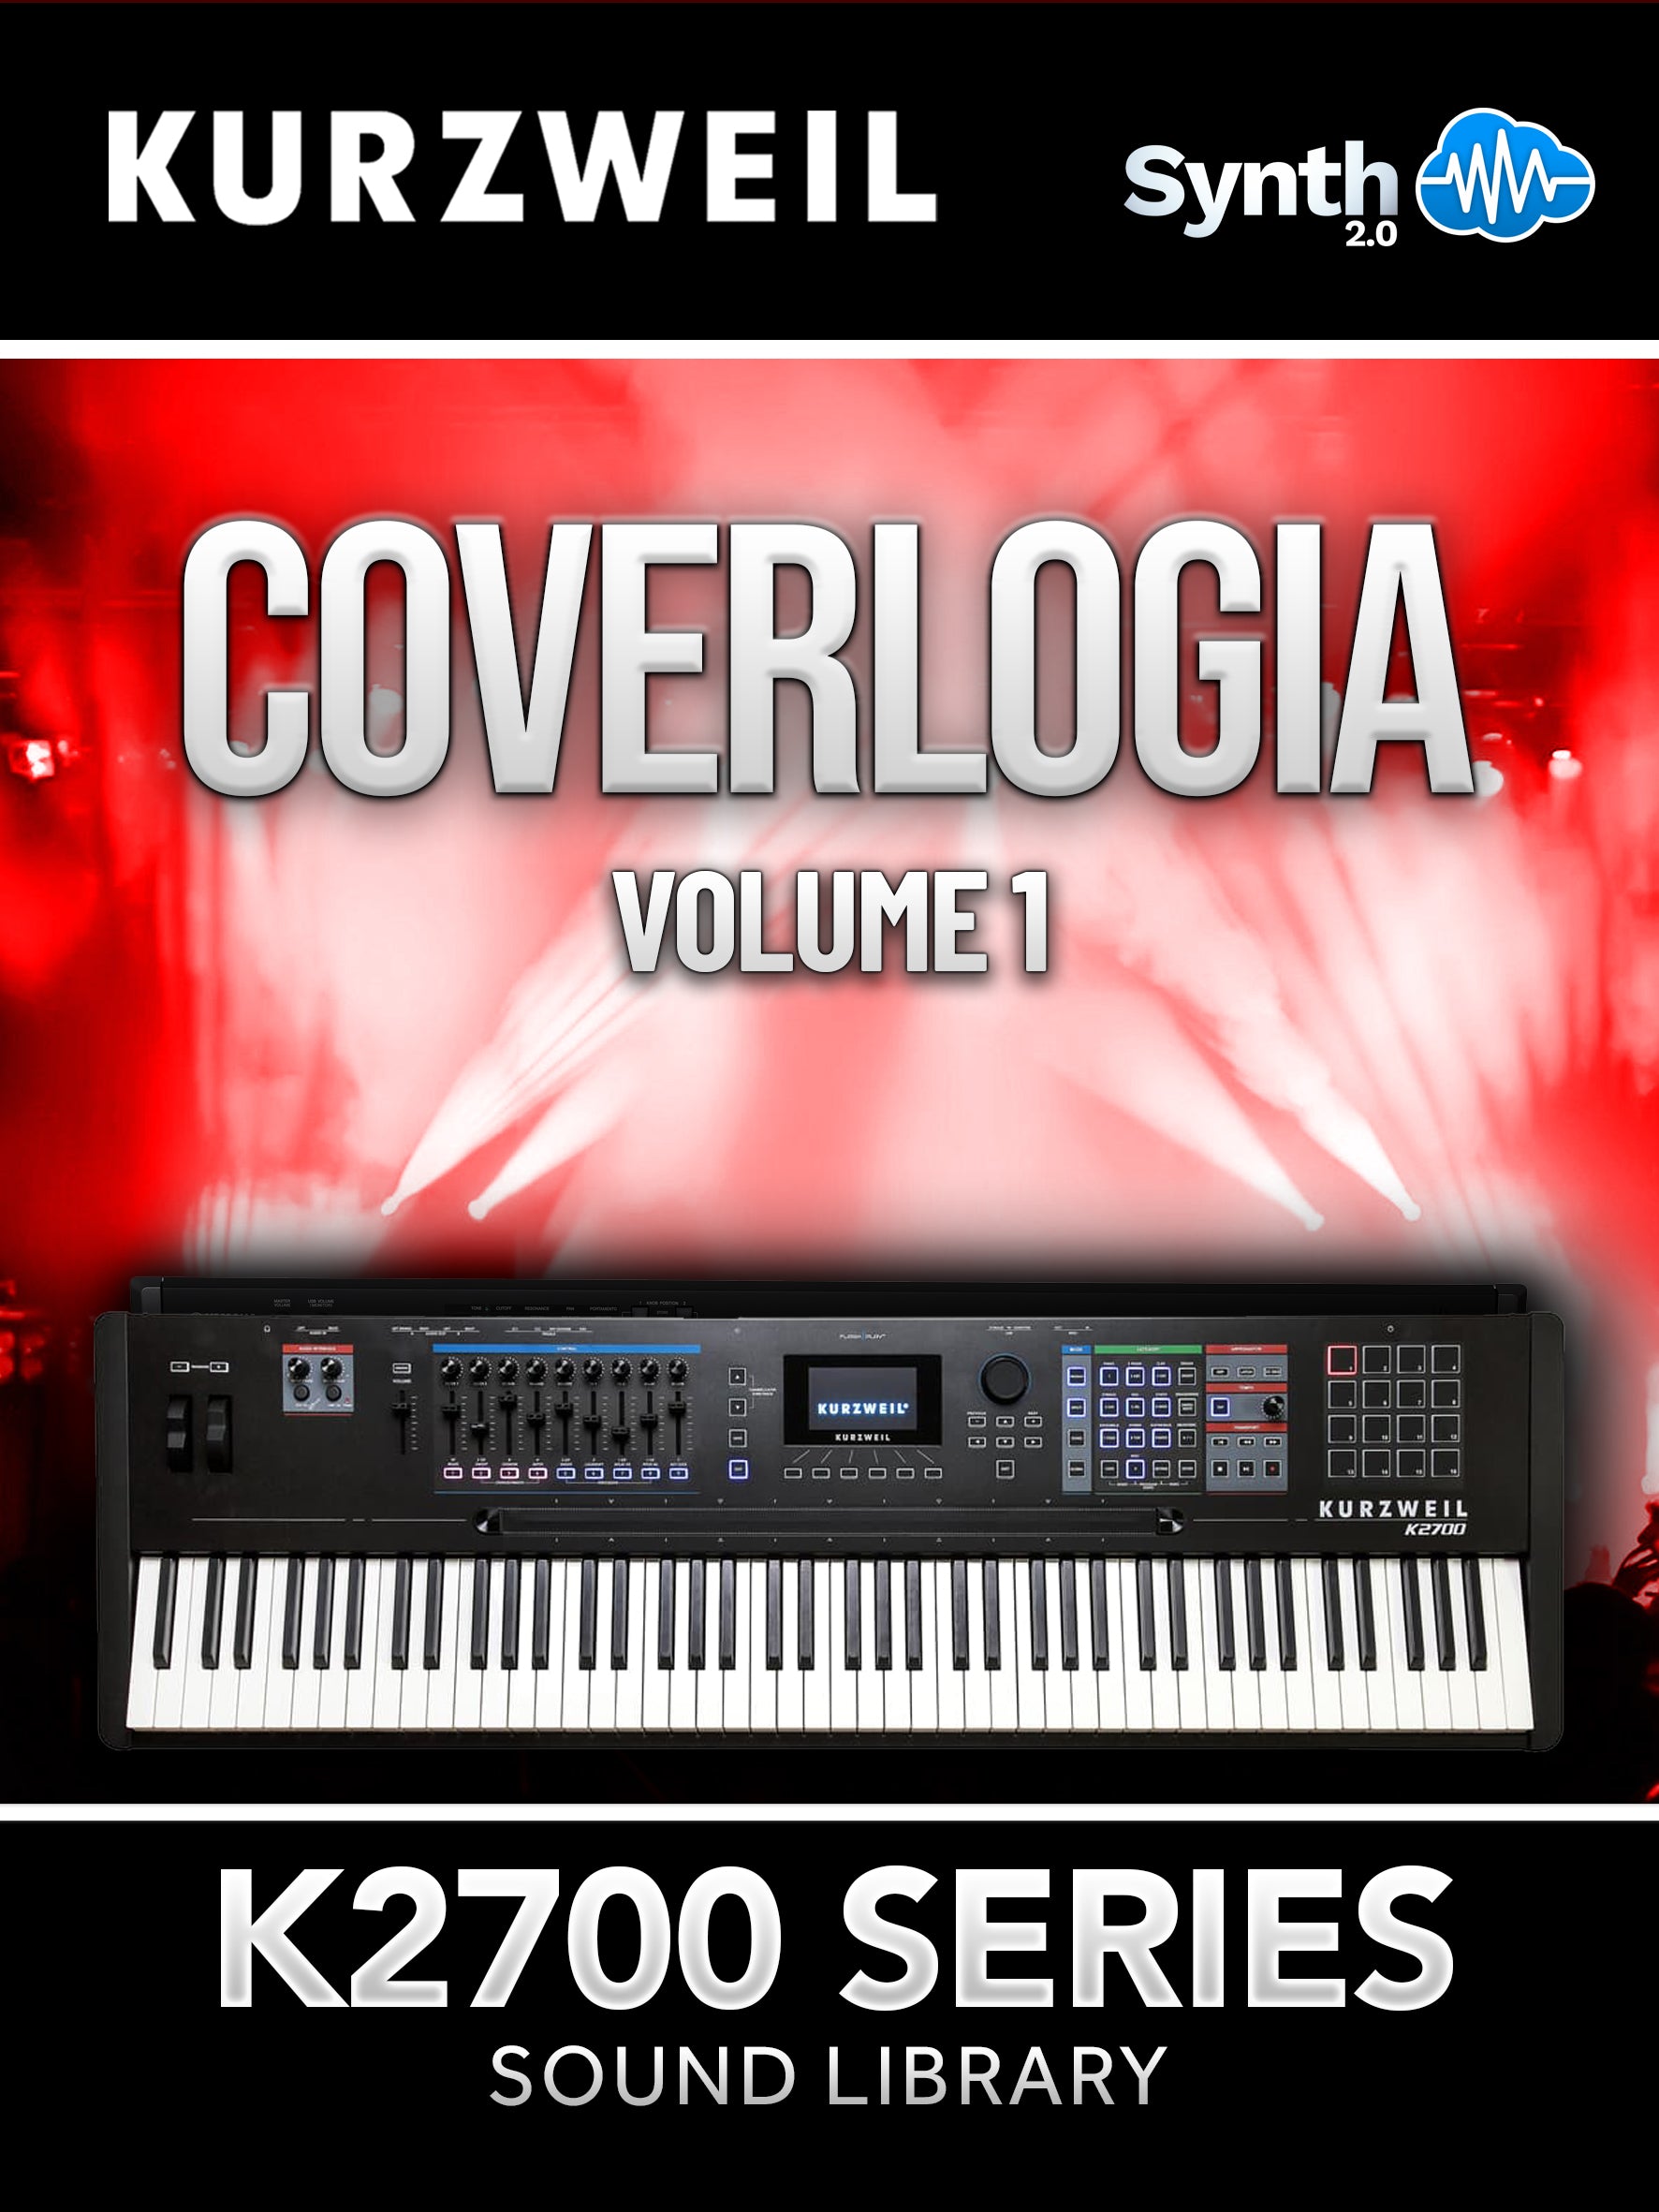 K27013 - Coverlogia V1 - Kurzweil K2700 ( 58 presets )